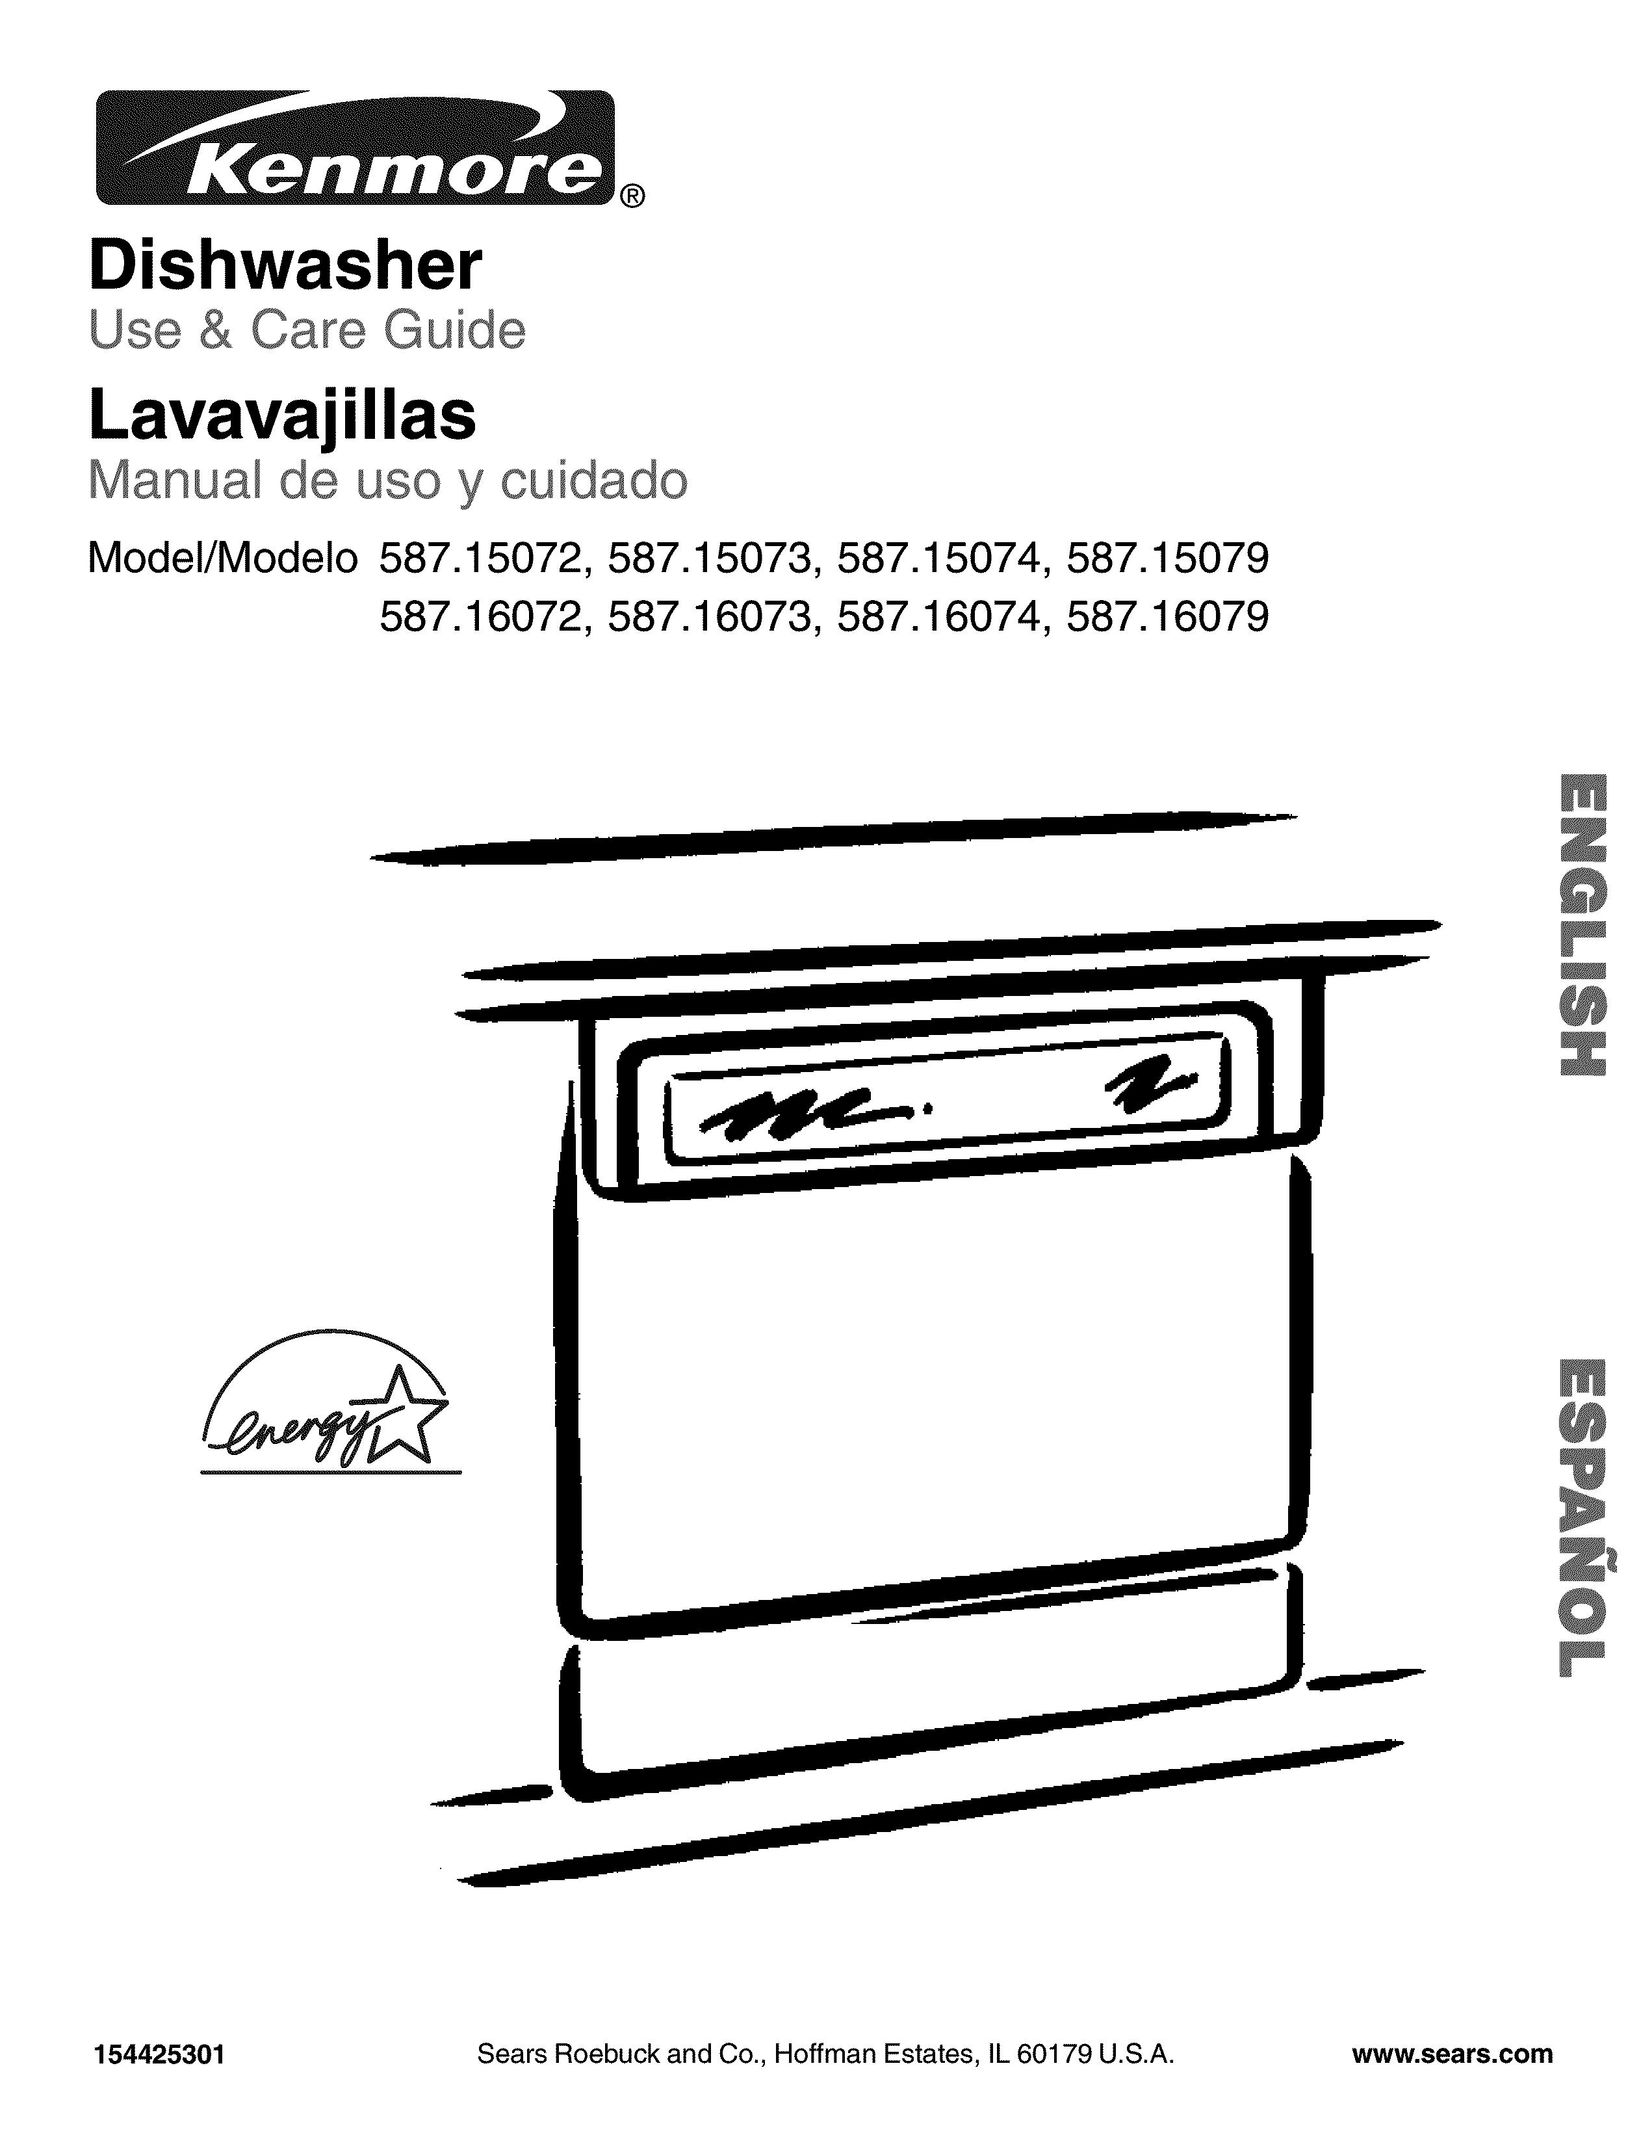 Kenmore 587.15079 Dishwasher User Manual